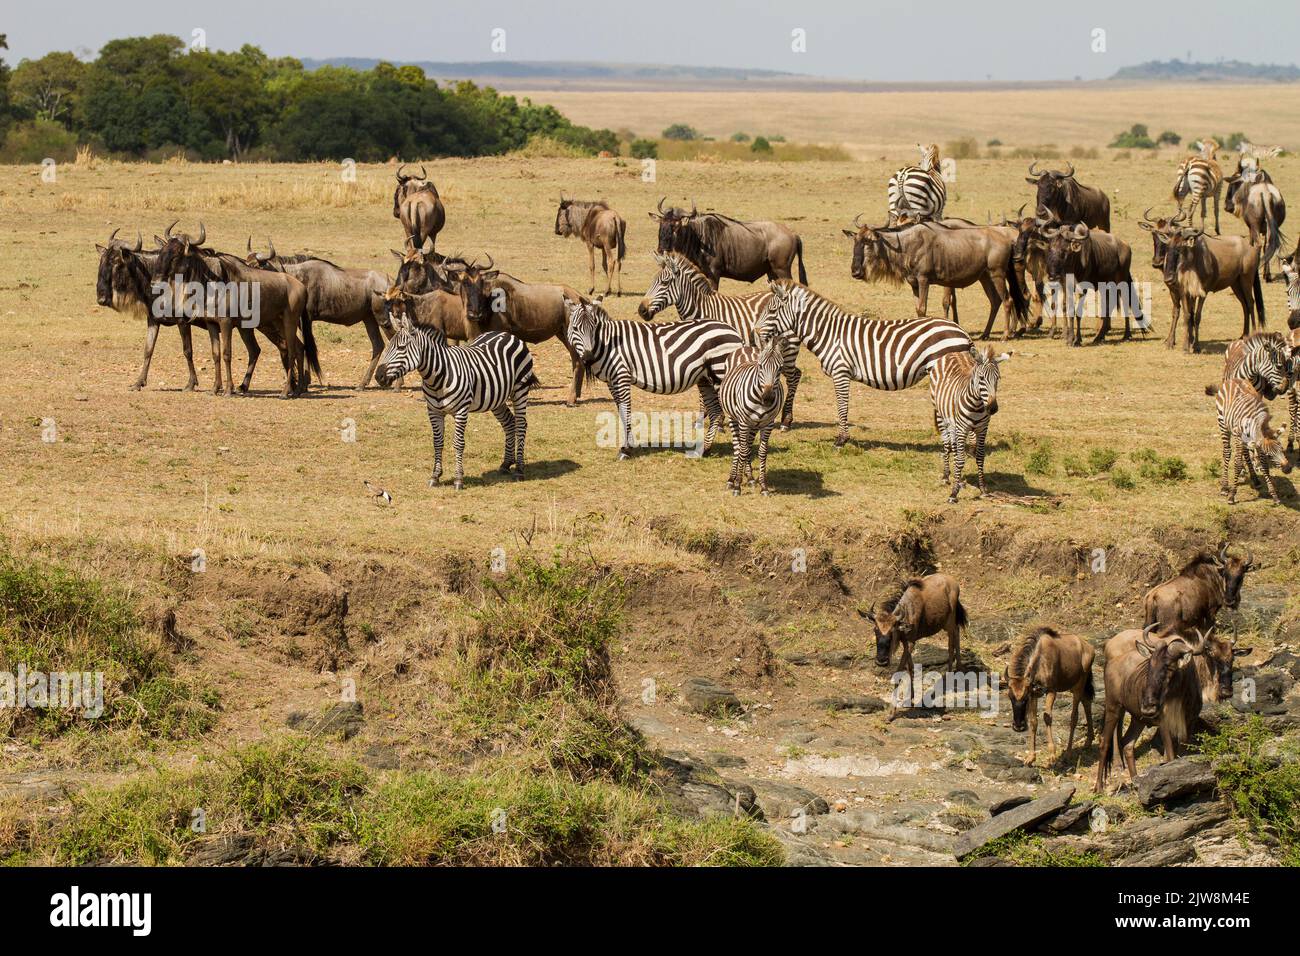 Wildebeest (Connochaetes taurinus)  and Zebra (Equus quaga) near a river crossing Stock Photo